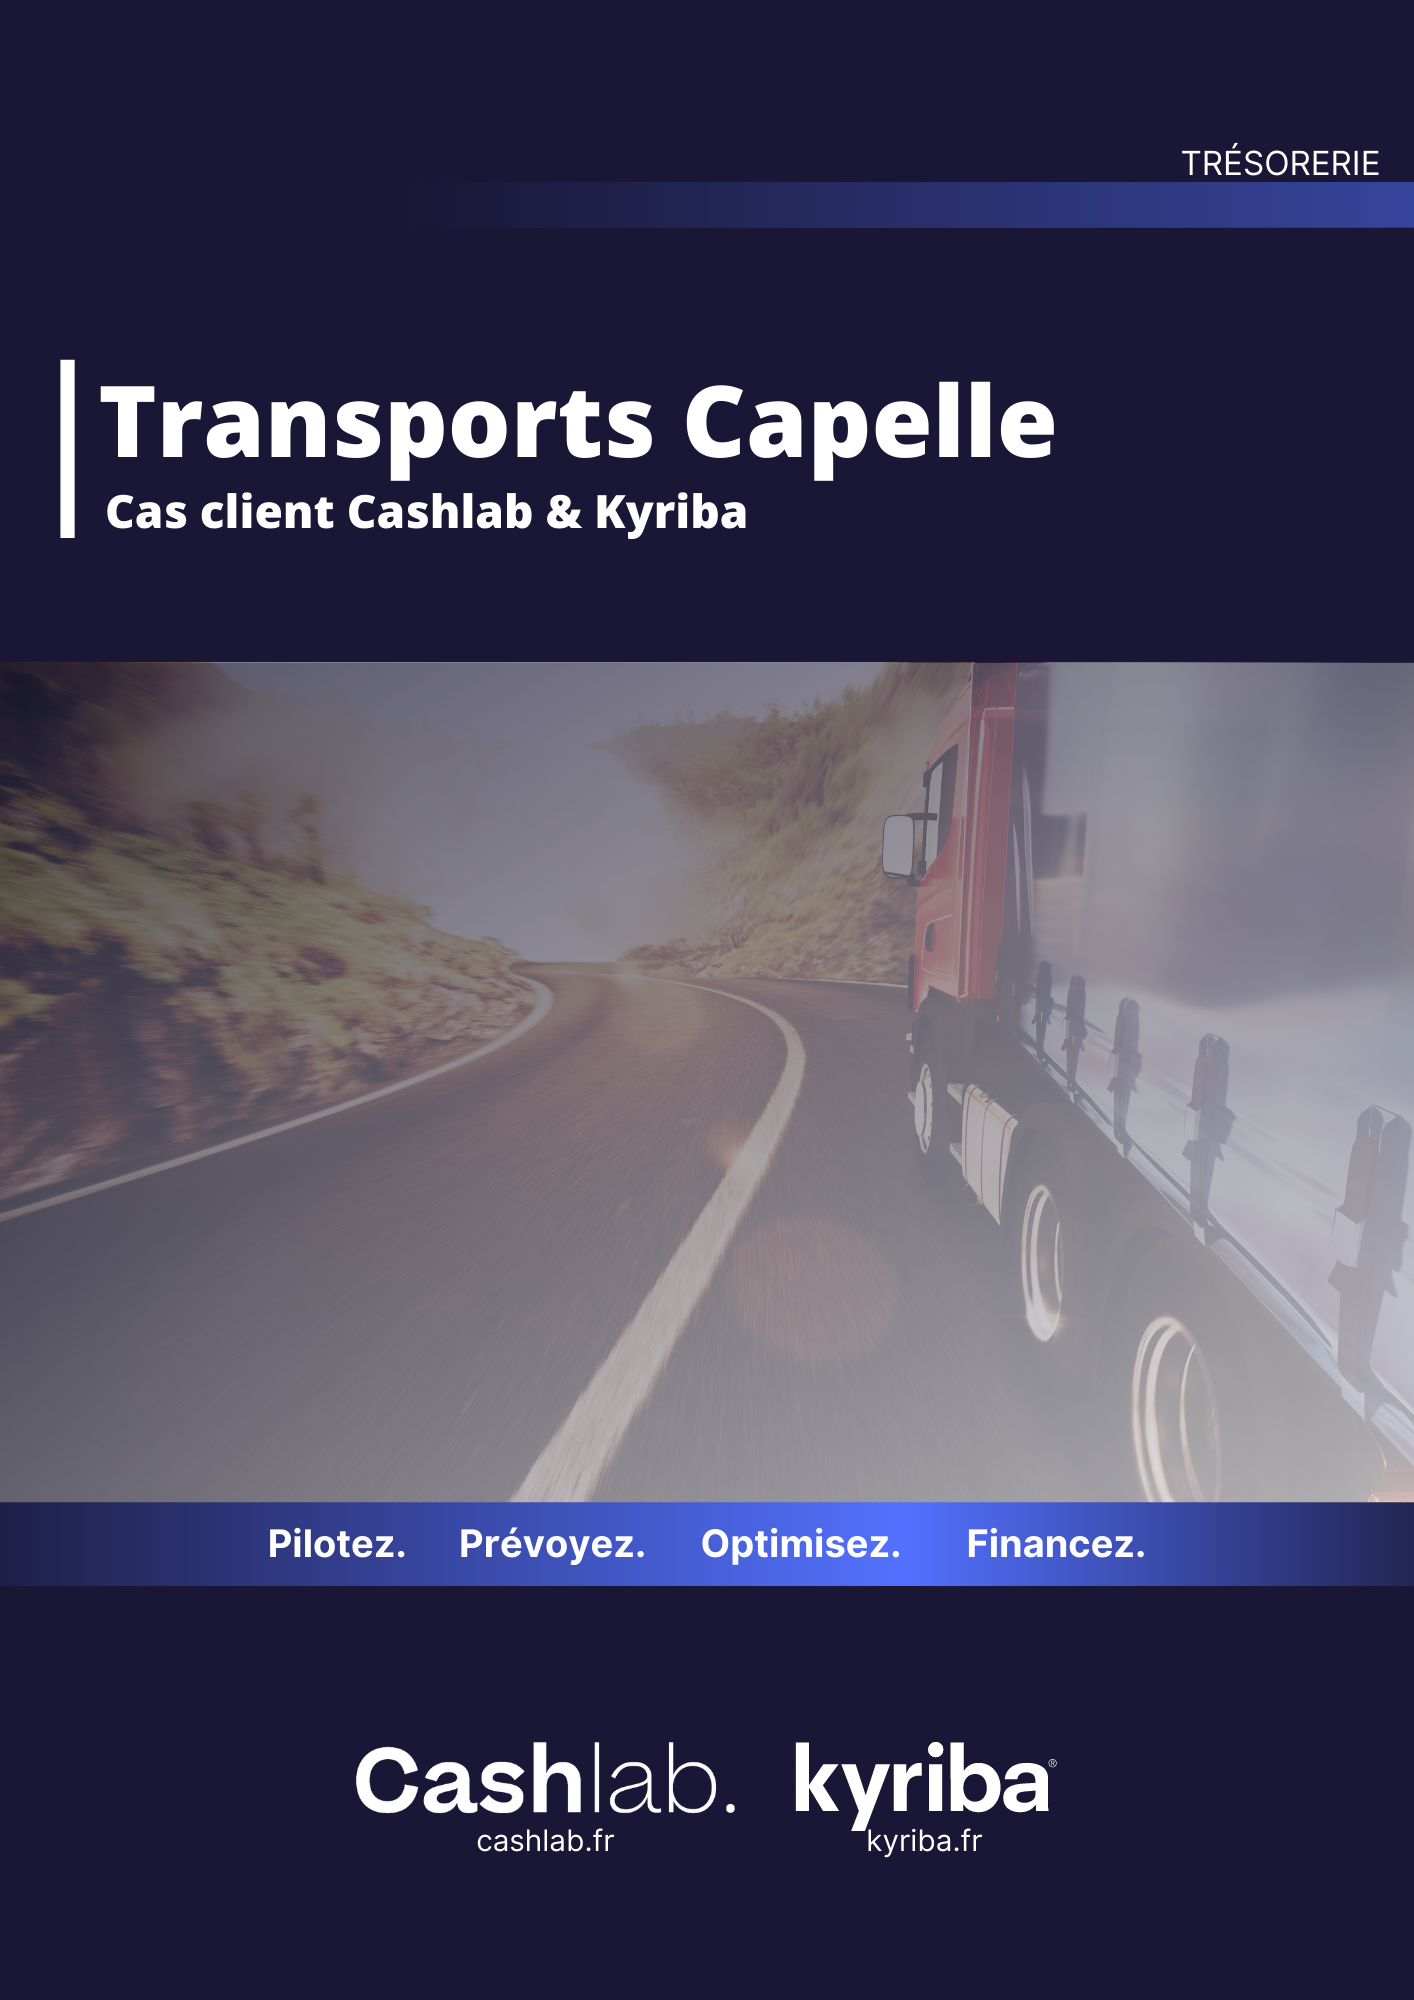 Cas Transports Capelle